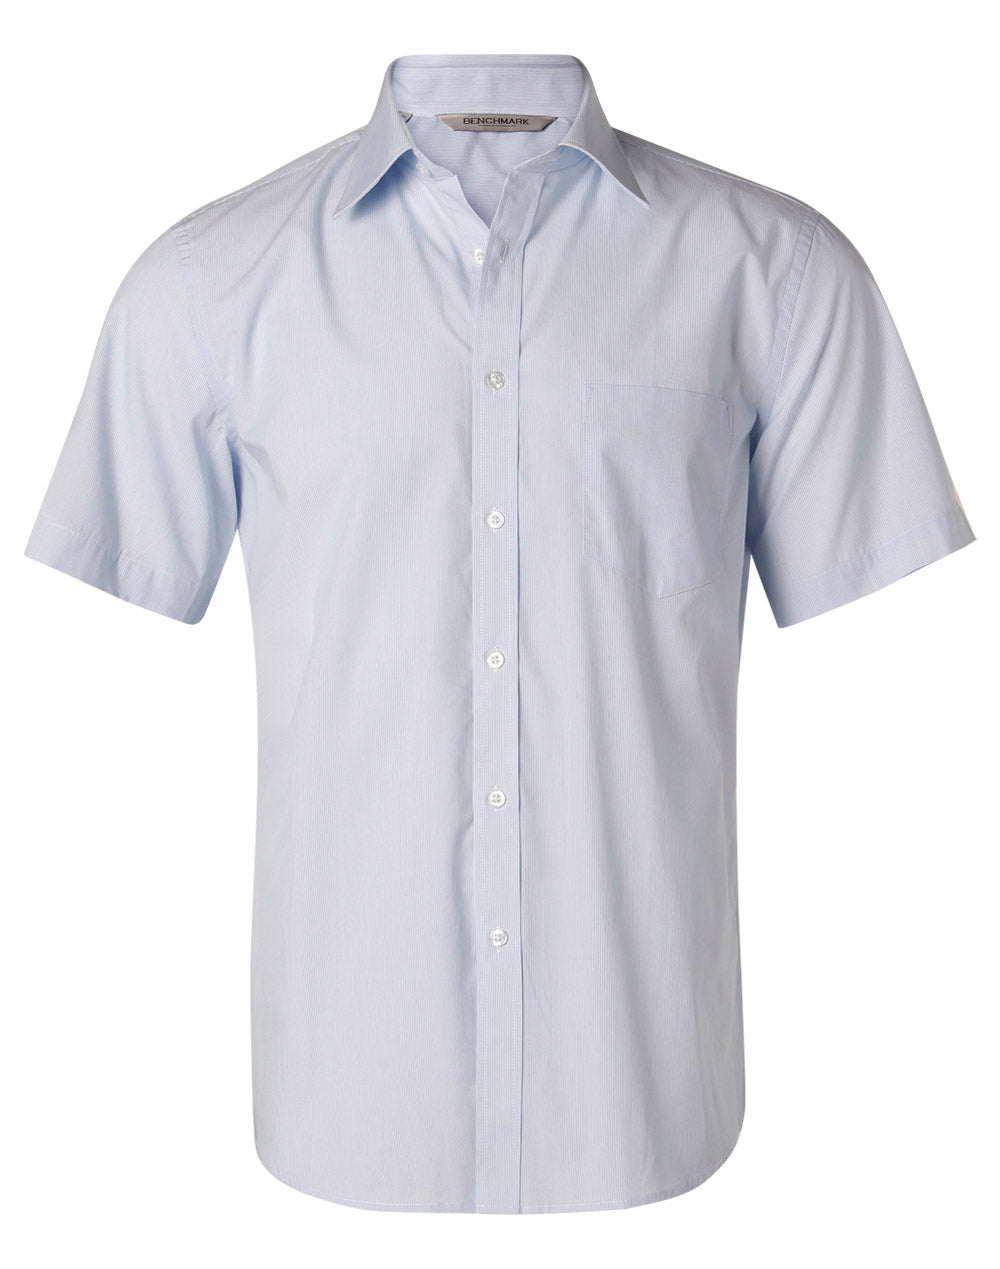 Benchmark M7211 Men's Fine Stripe Short Sleeve Shirt